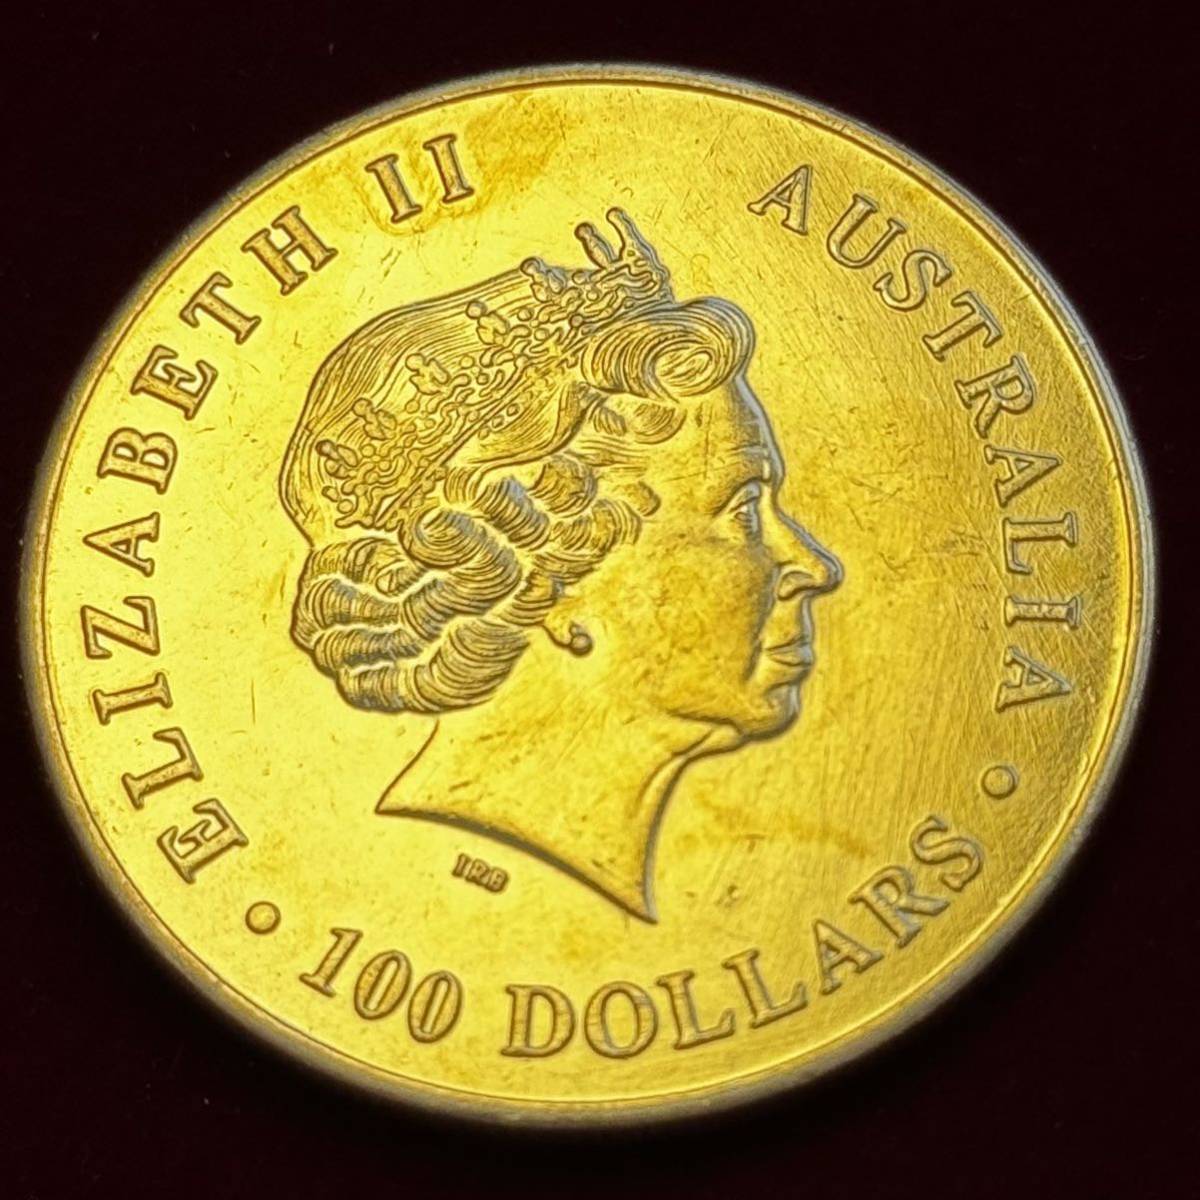 オーストラリア エリザベス2世 硬貨 古銭 2015年 カンガルー 月 記念幣 コイン 金貨 外国古銭 海外硬貨_画像1